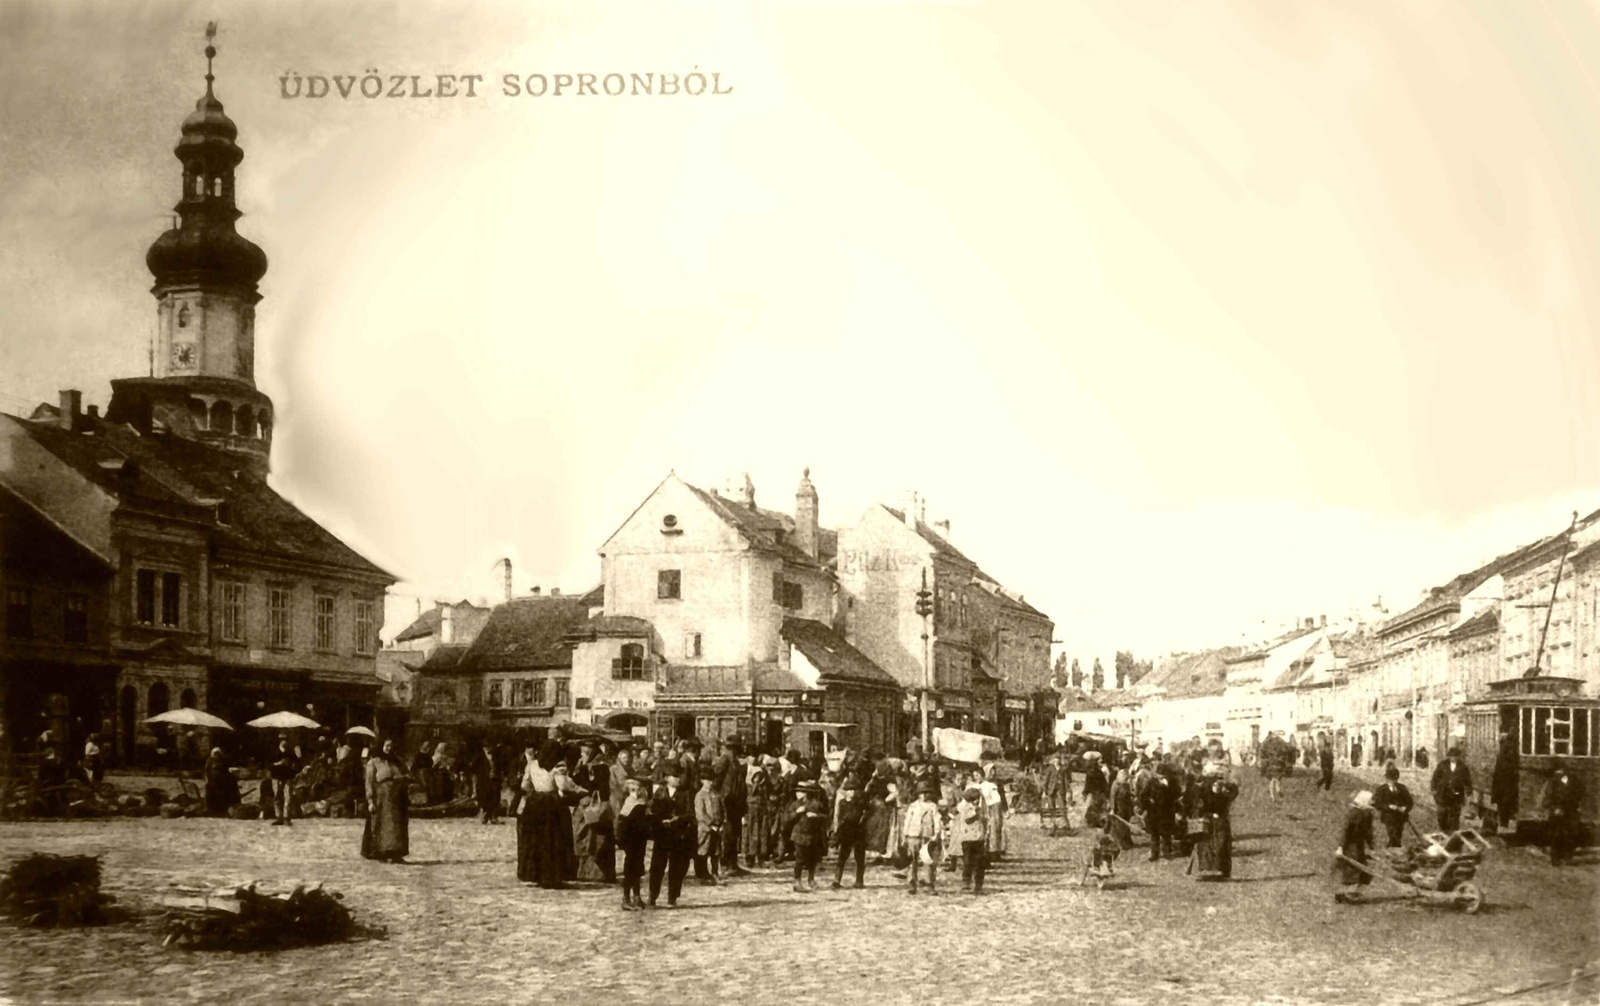 03. Postai üdvözlőlap a soproni piacról (1920-as évek)